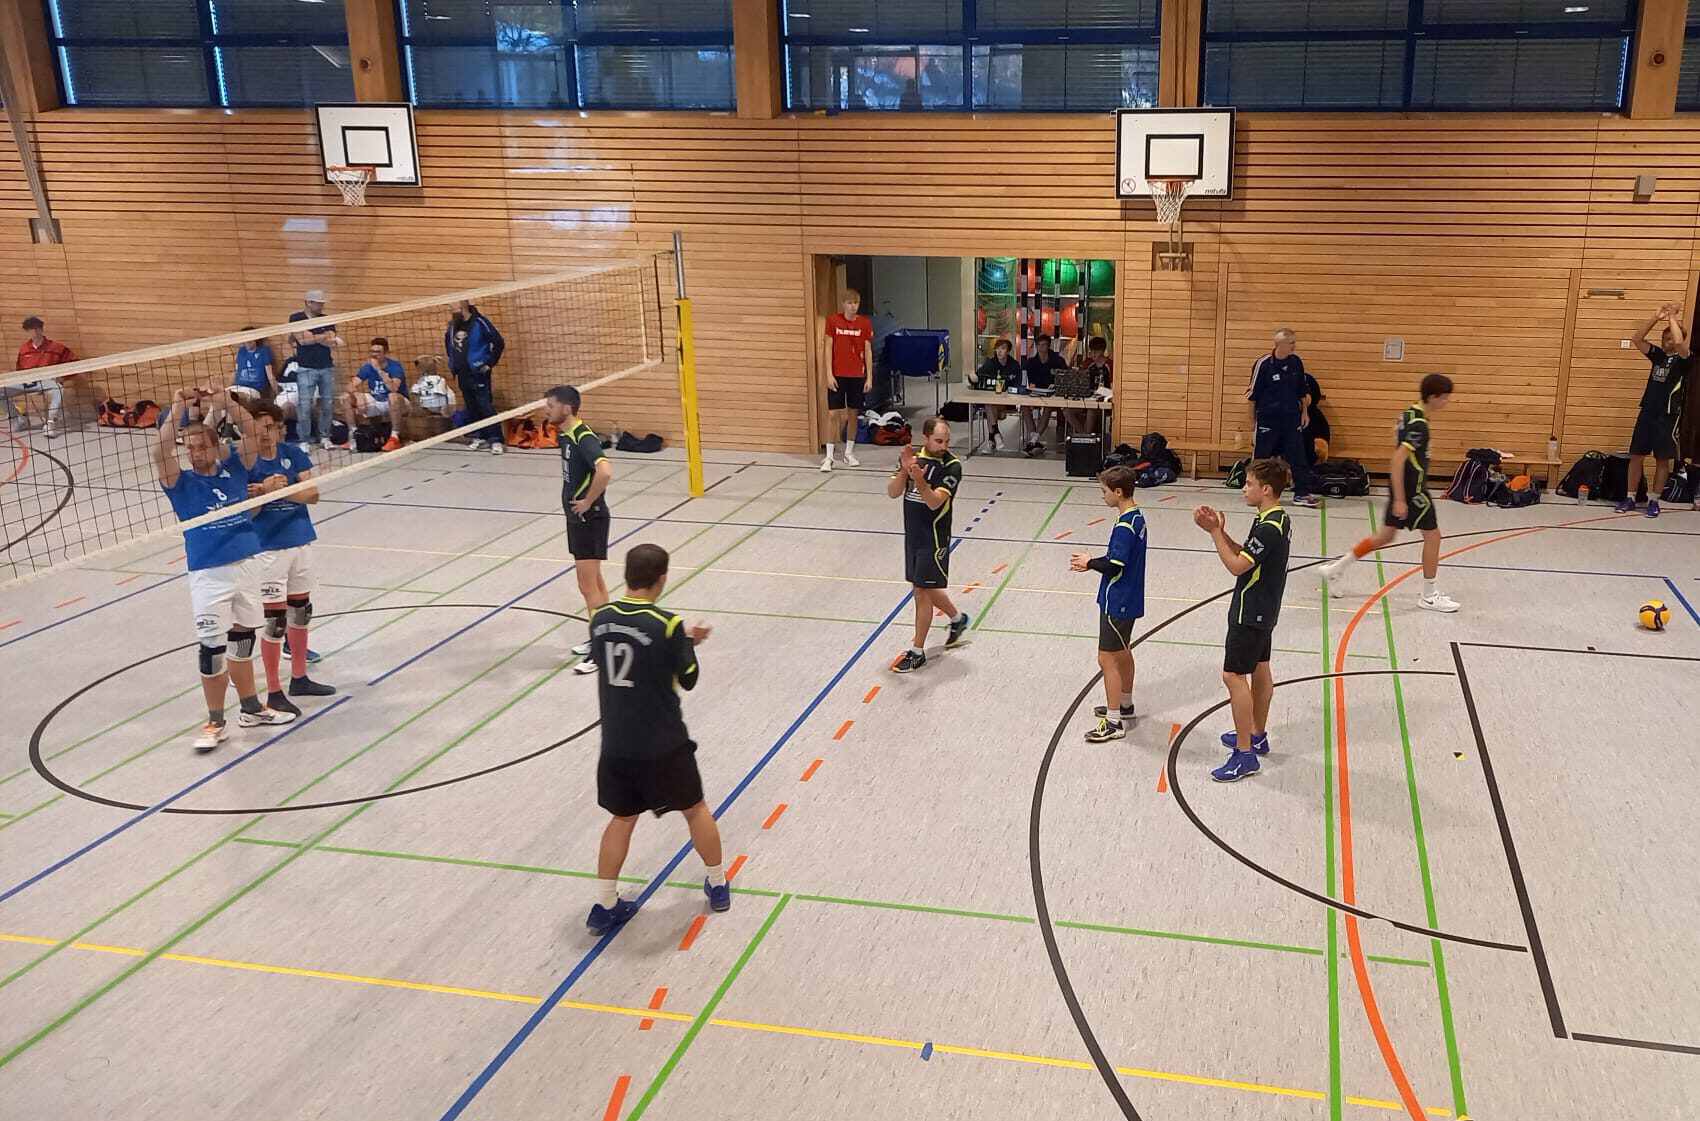 https://www.volleyball-rosenheim.de/wp-content/uploads/2022/02/Herren_2_Volleyball_Rosenheim_2201-e1666332097882.jpeg